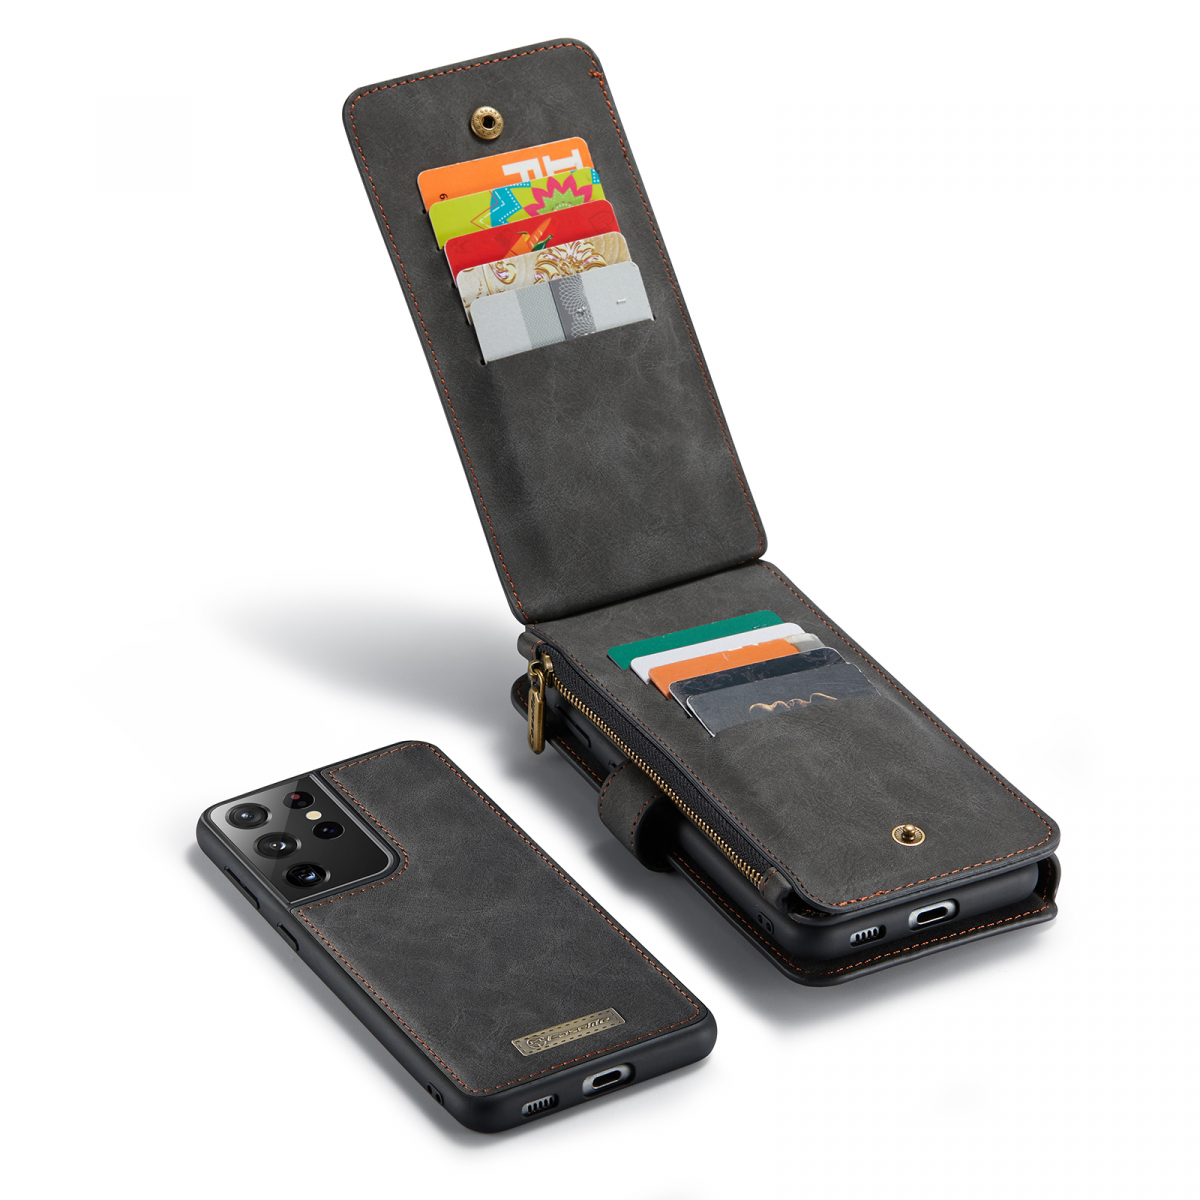 CaseMe 007 plånboksfodral + magnetskal, Samsung S21 Ultra, svart